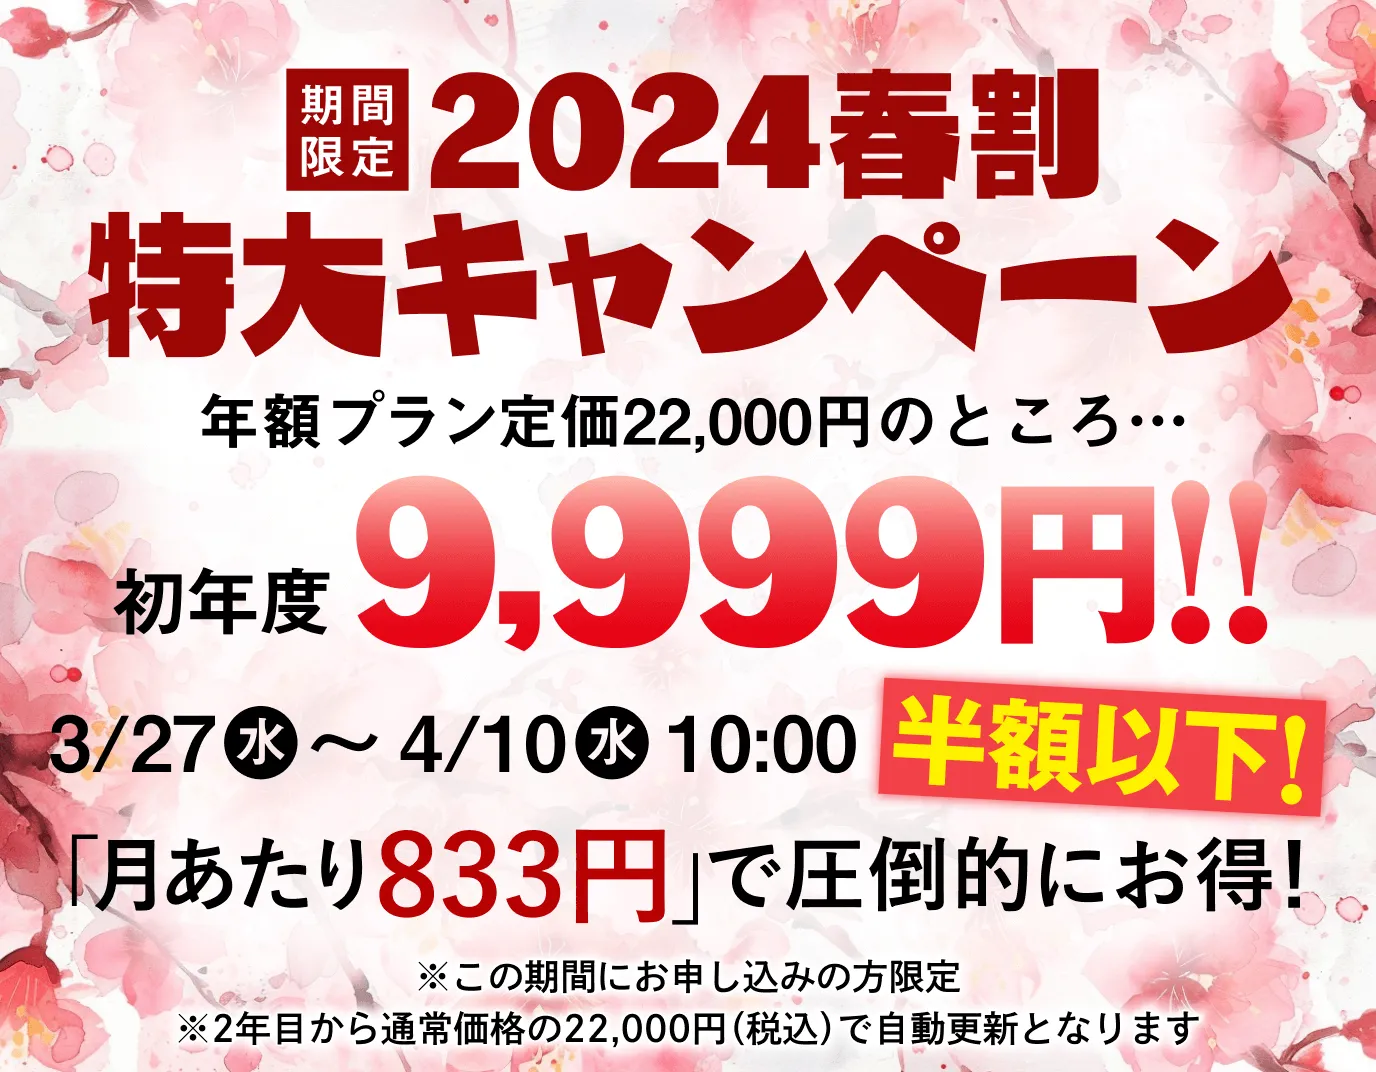 期間限定2024春割特大キャンペーン 年額プラン定価22,000円のところ初年度9,999円